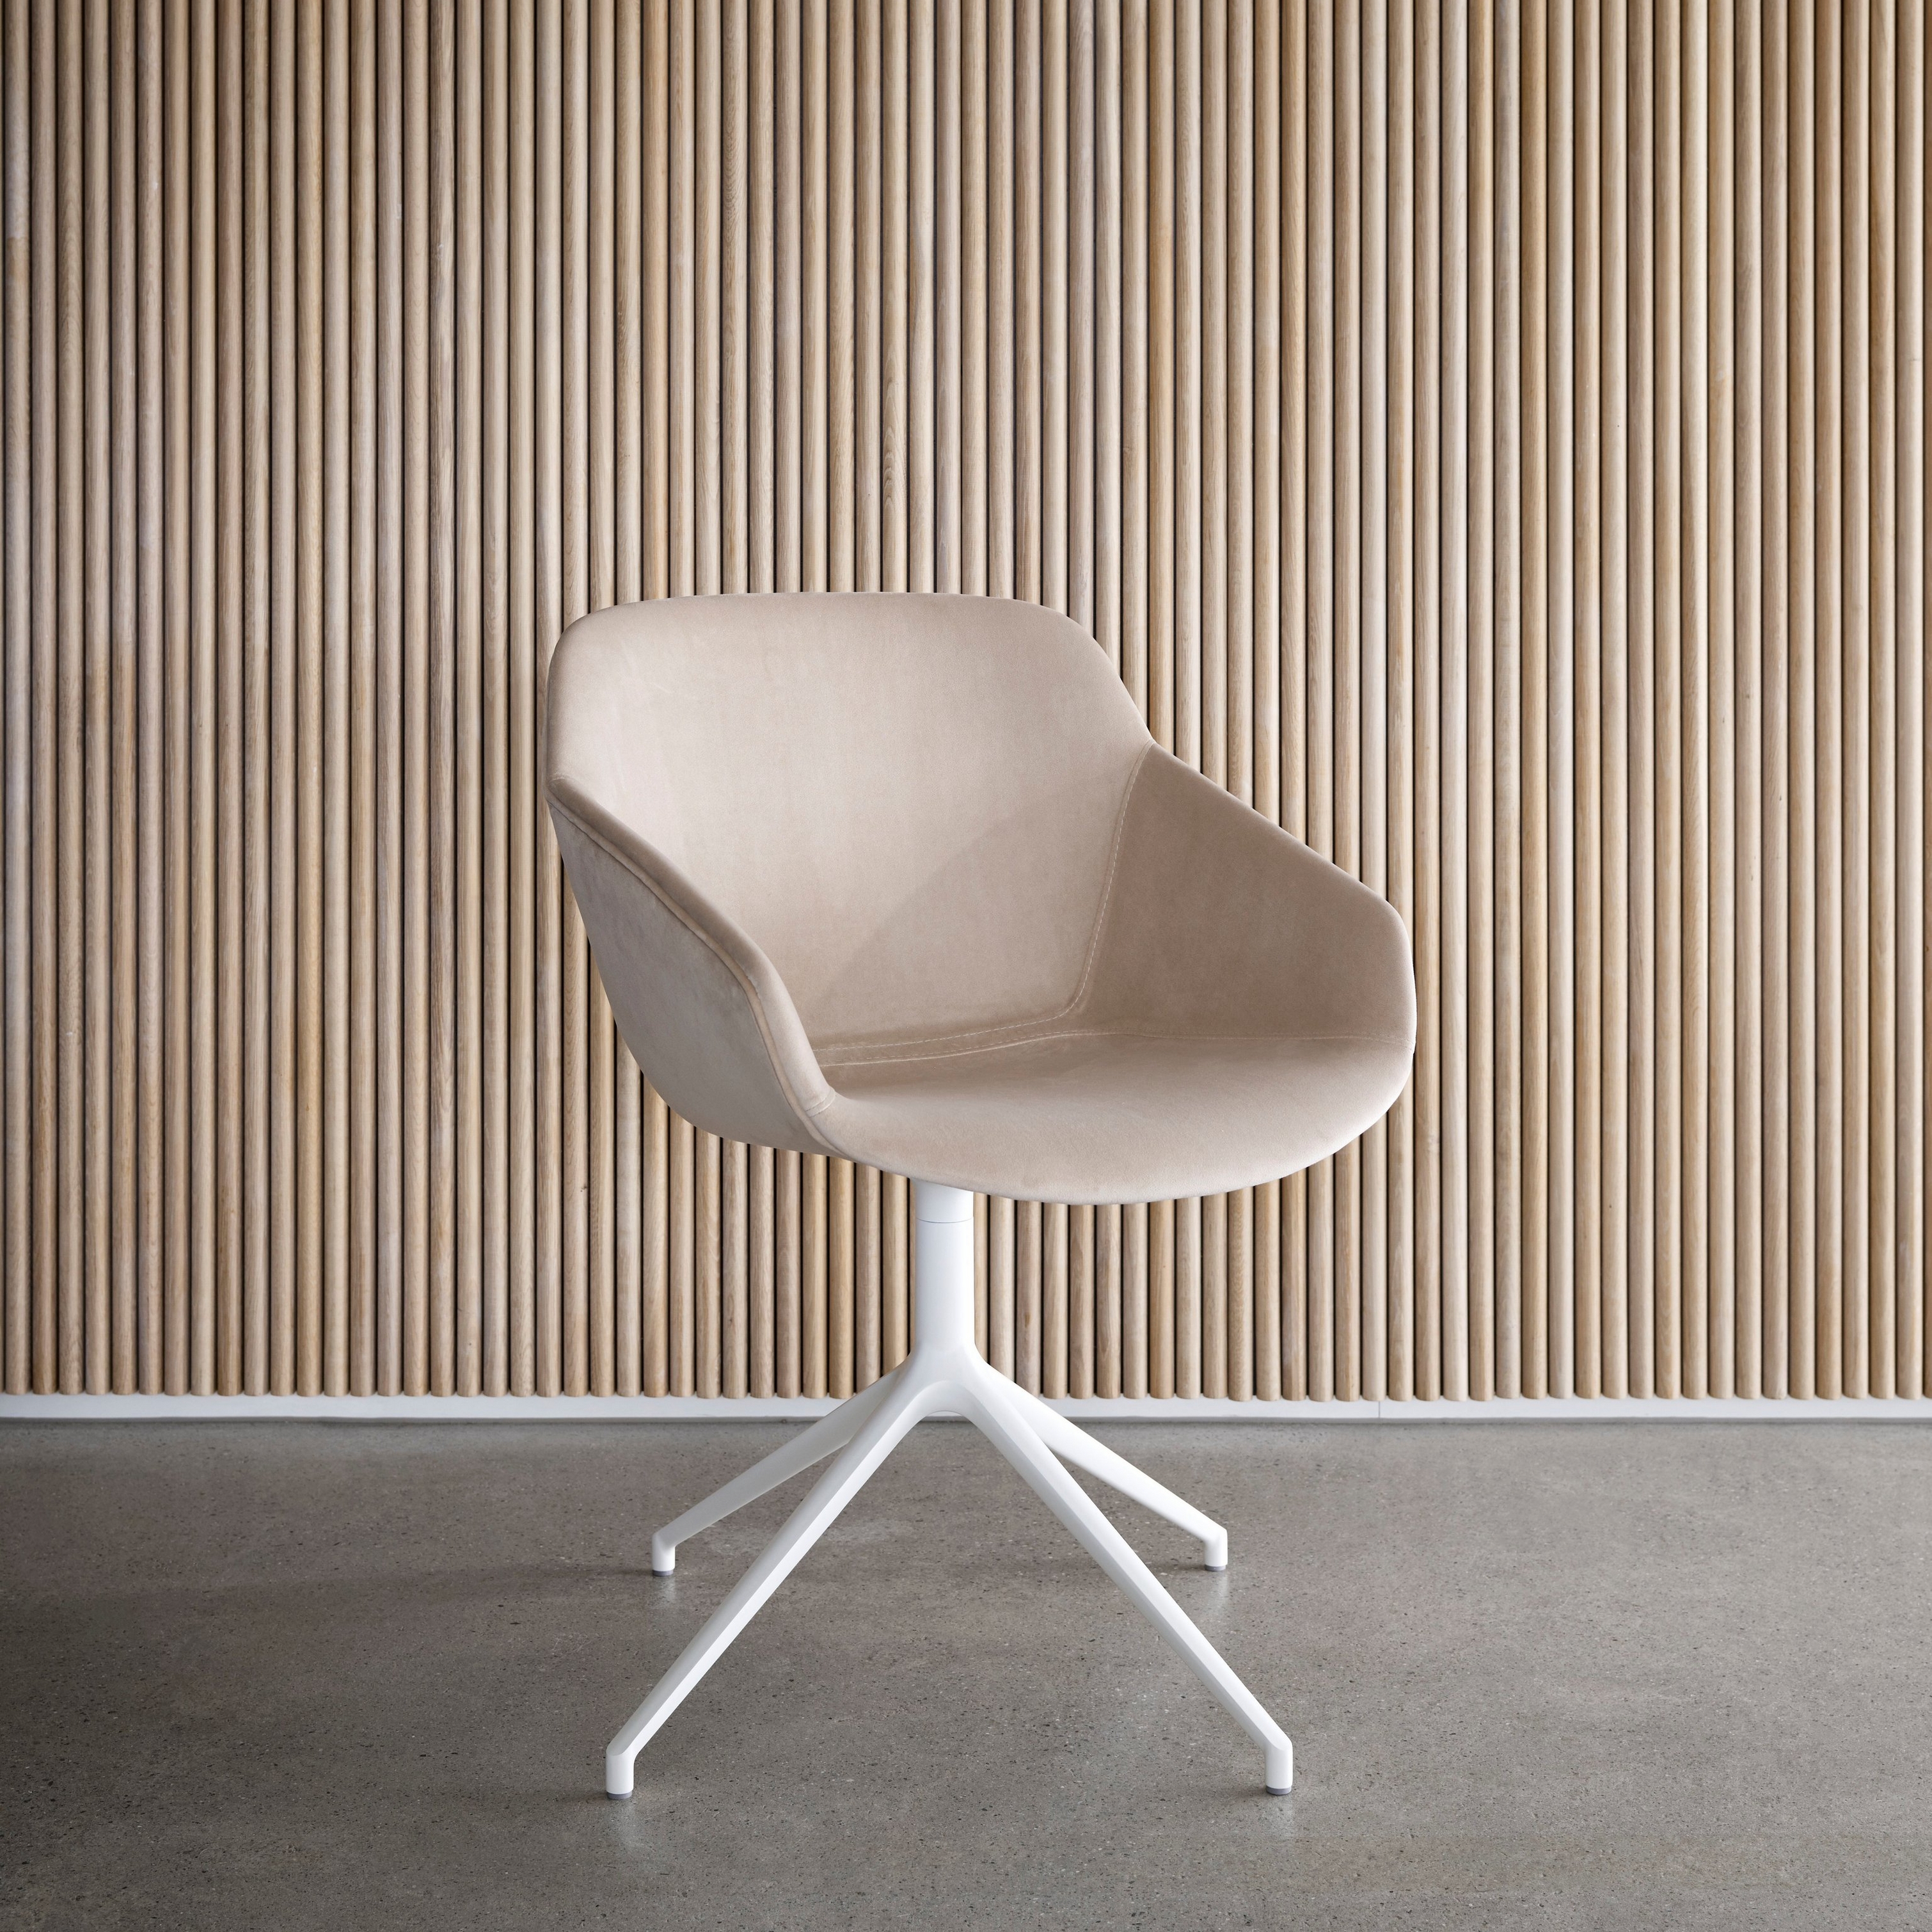 Chaise beige avec une base blanche contre un mur à lattes en bois vertical.